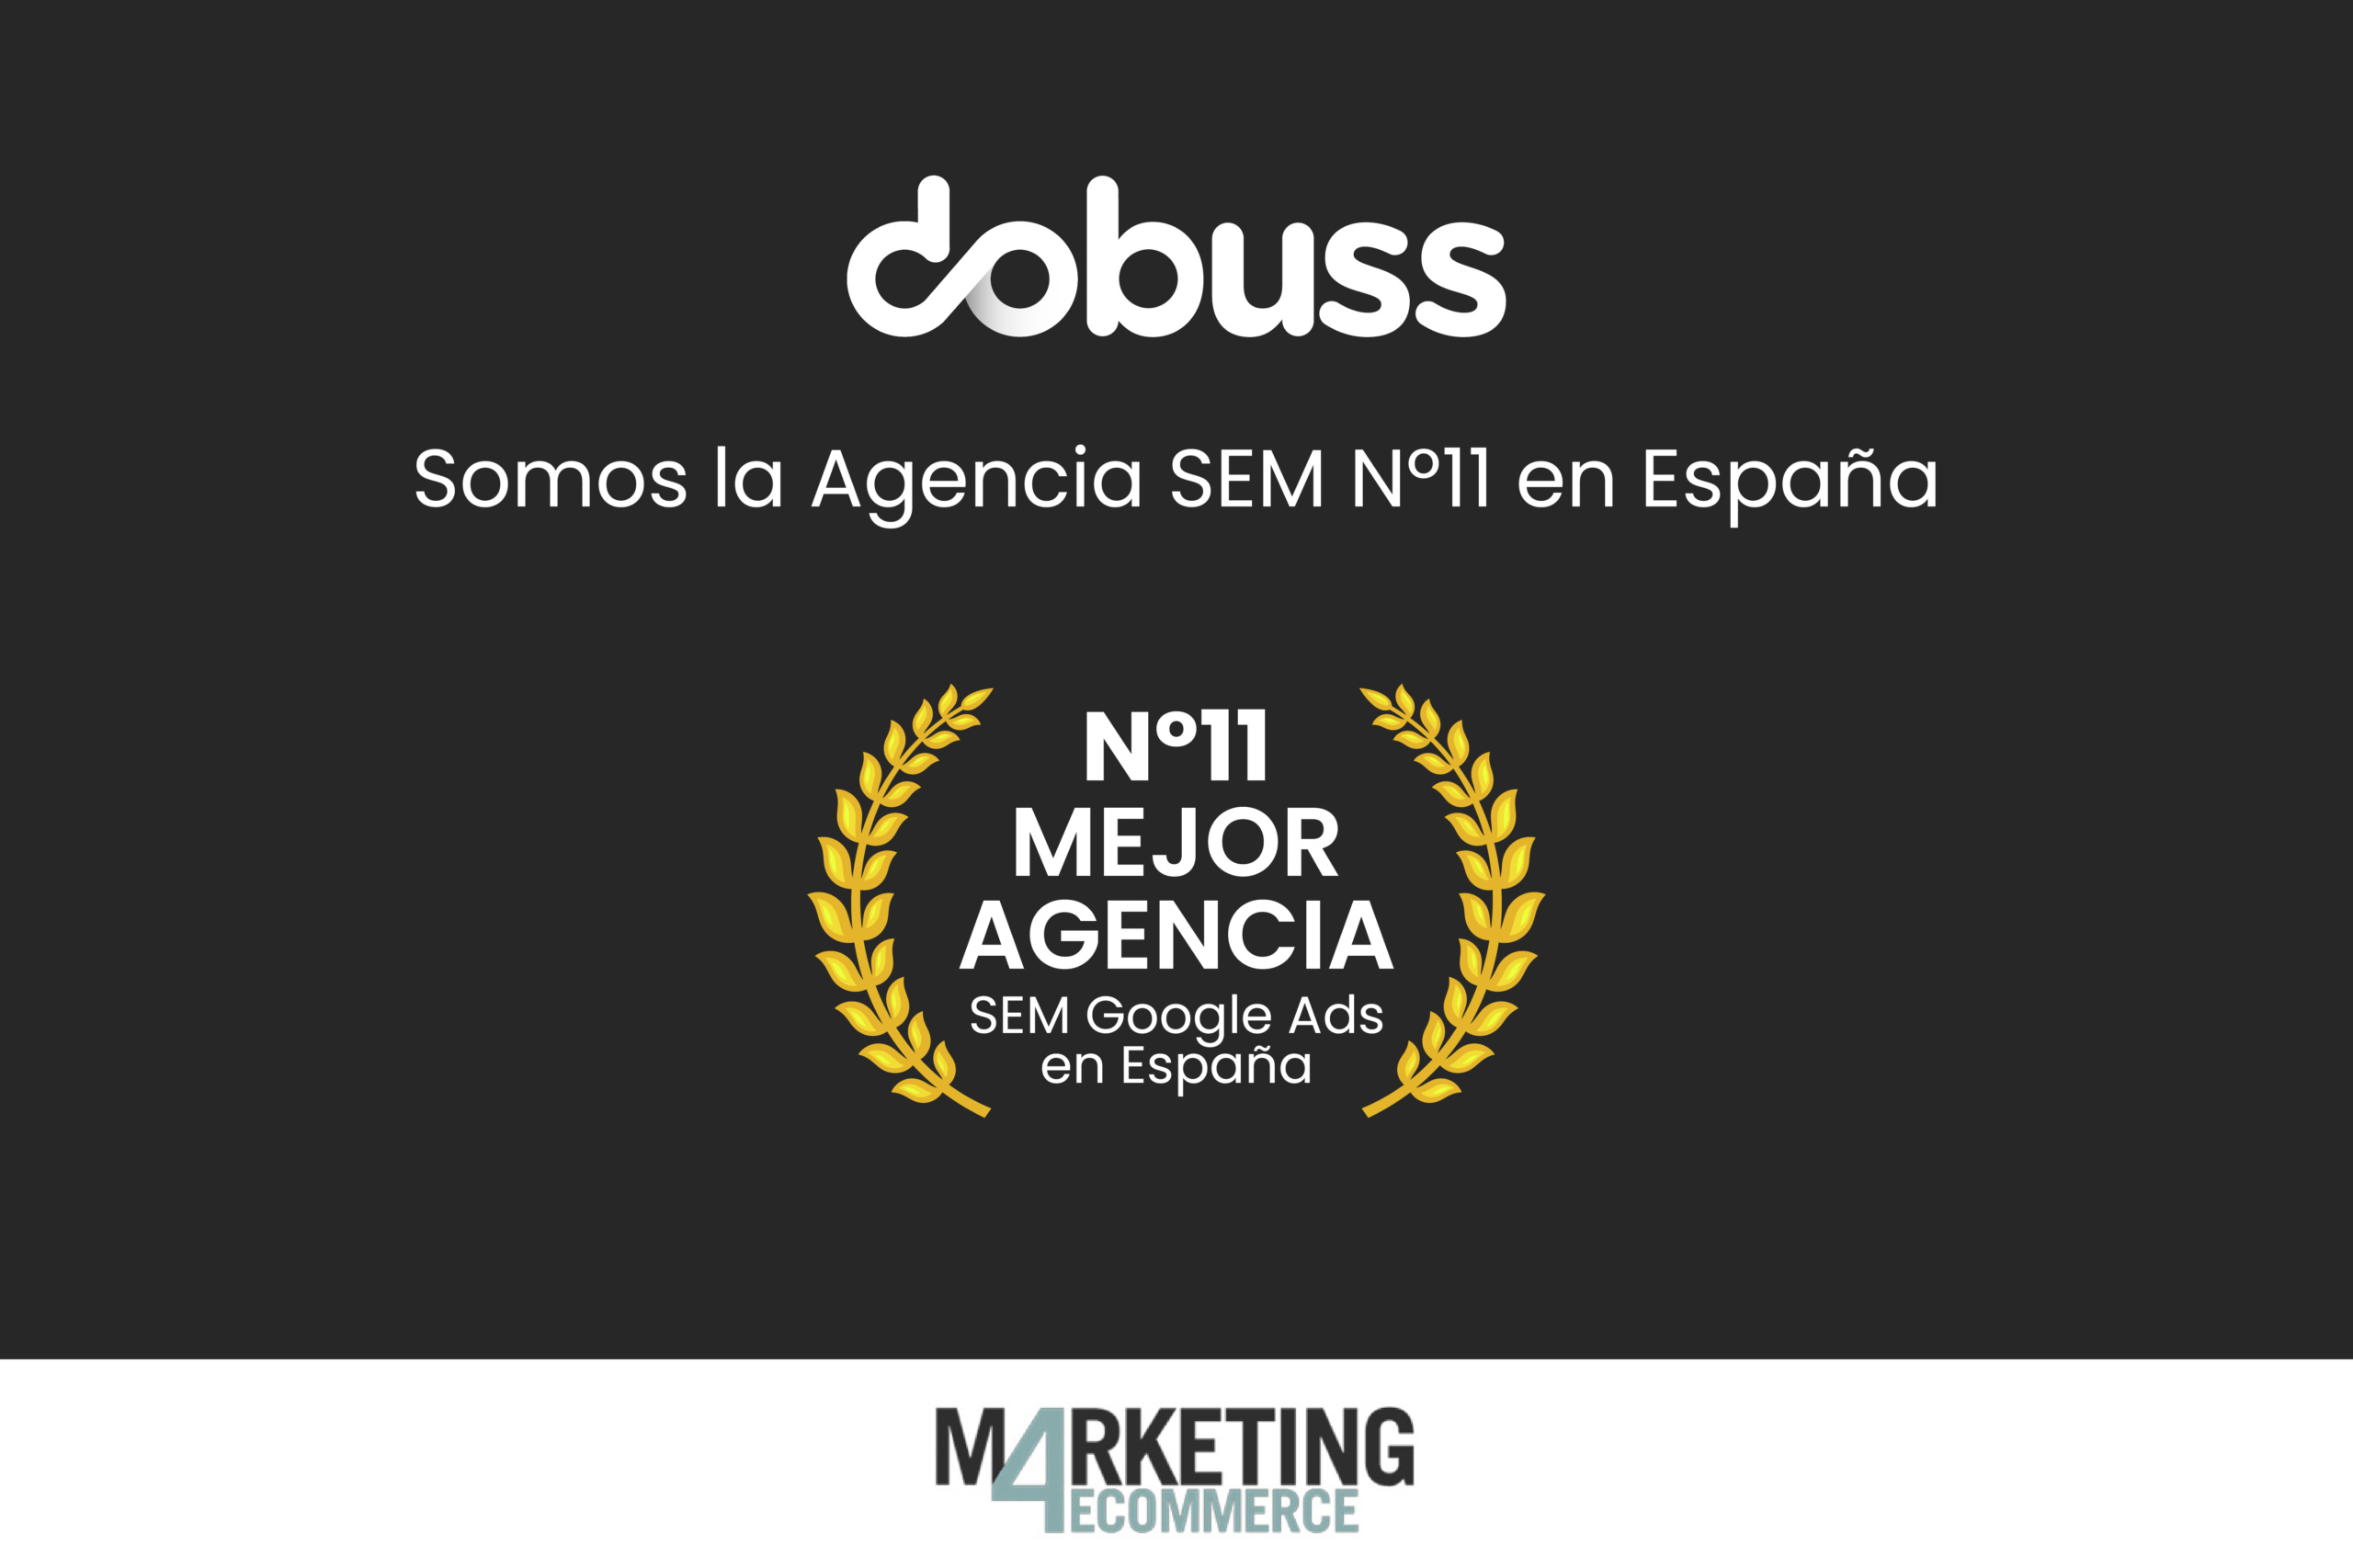 Las mejores agencias SEM de España - Dobuss